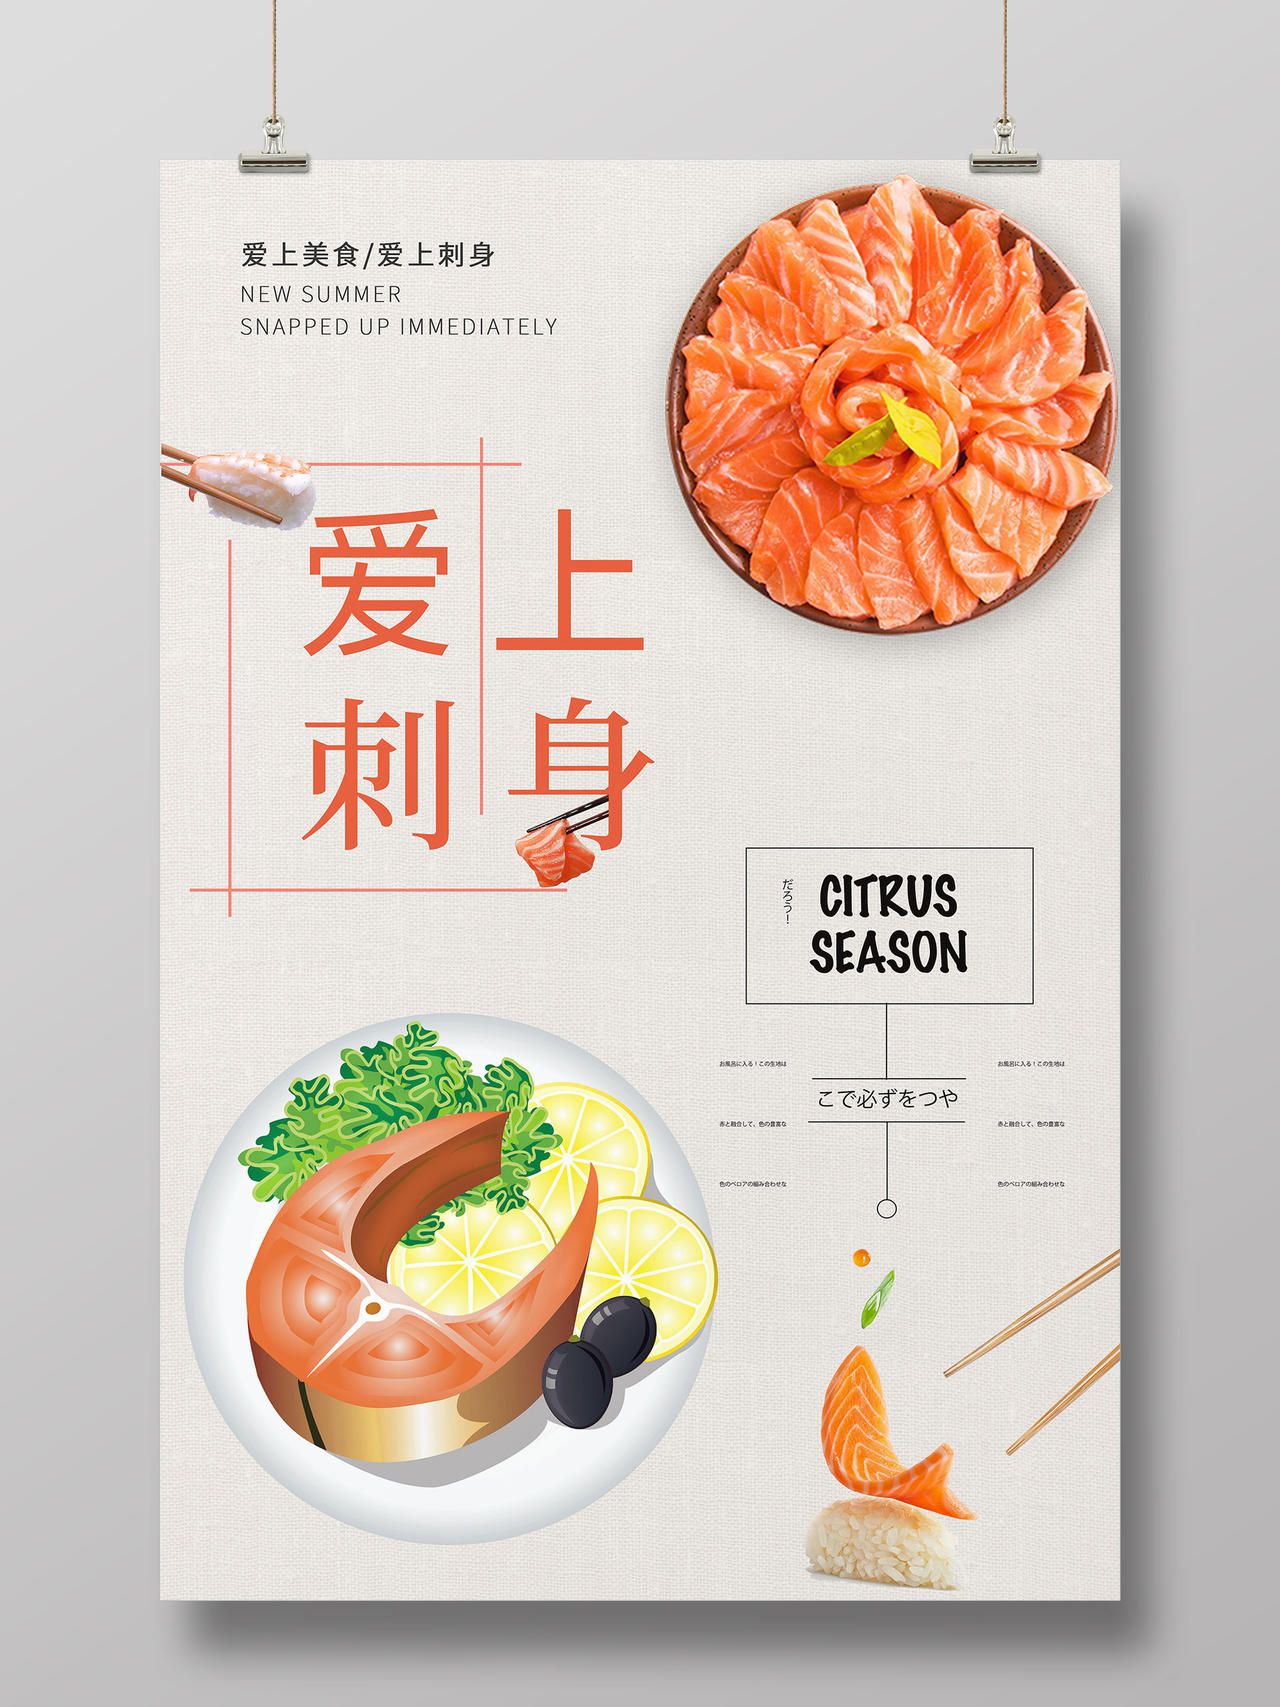 简约白色背景美食日式料理爱上刺身海报宣传